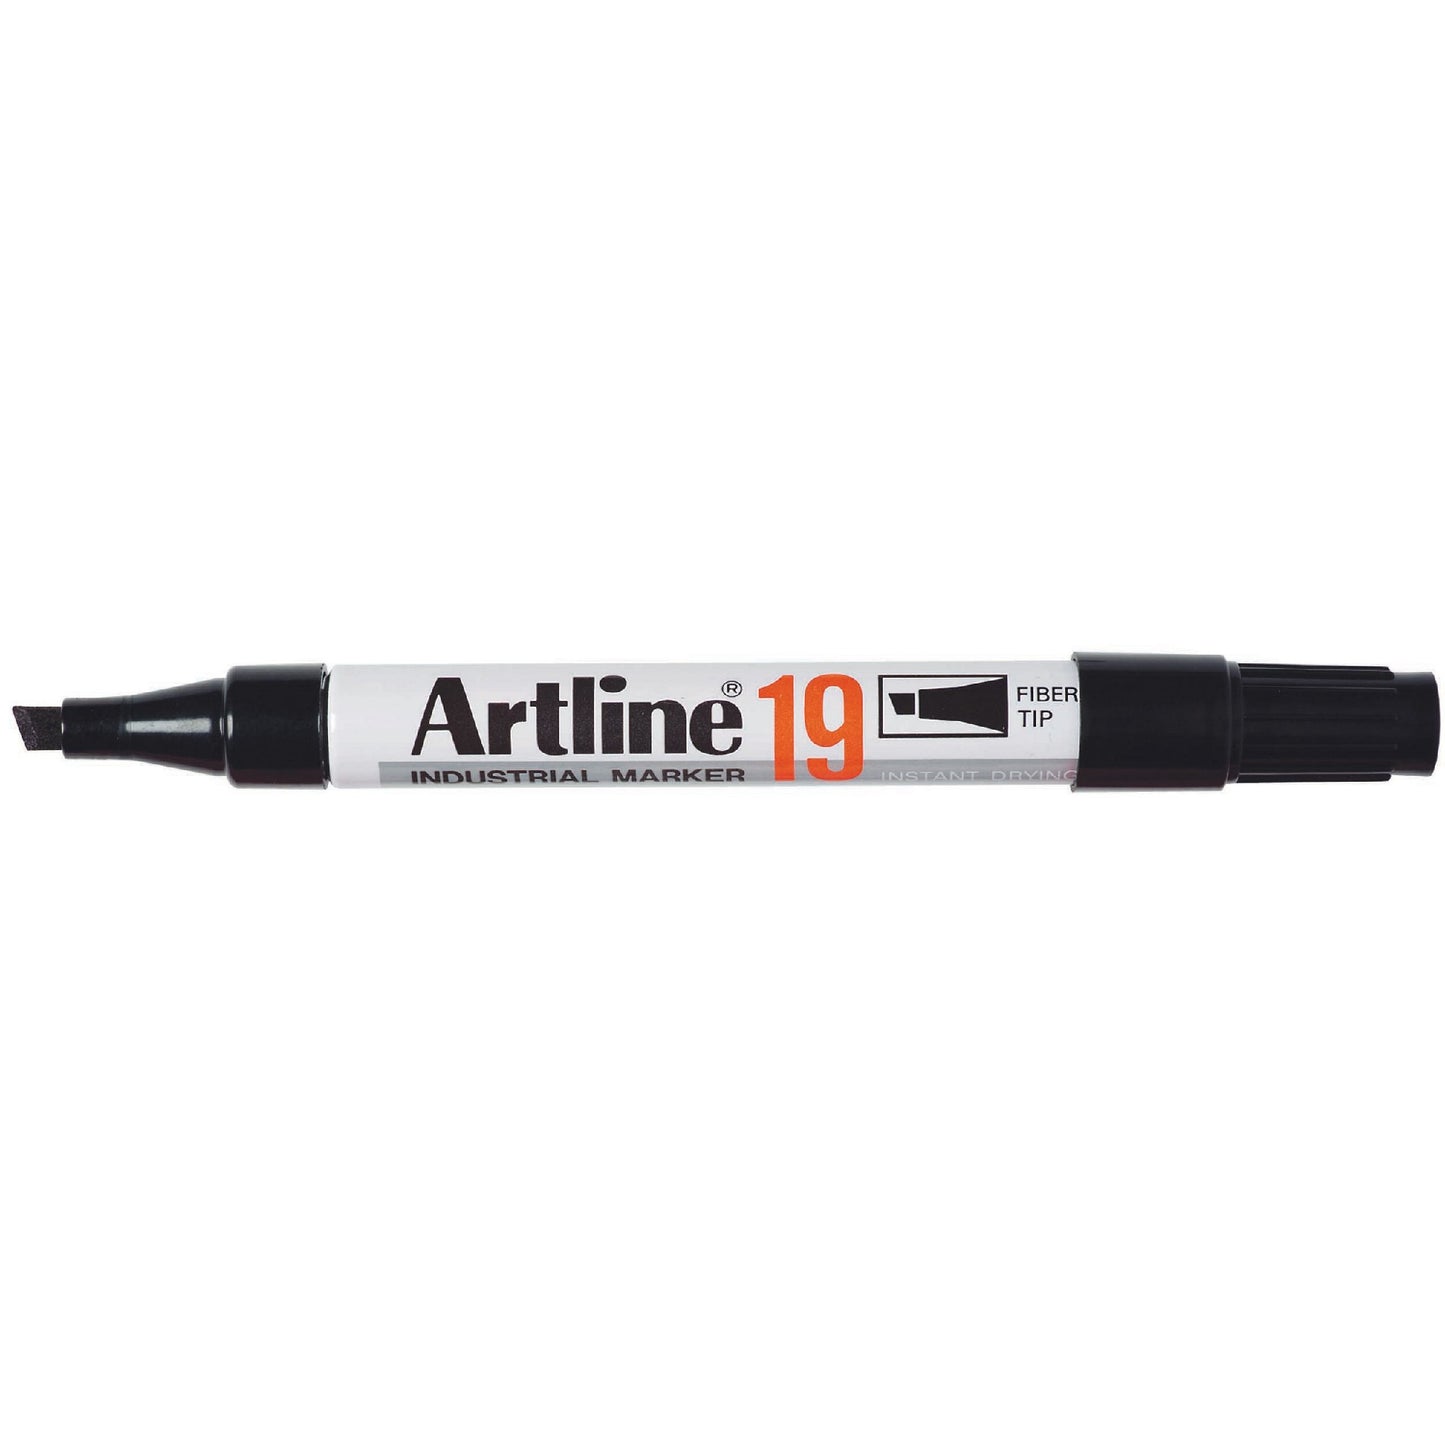 Artline 19 Industrial Marker Black